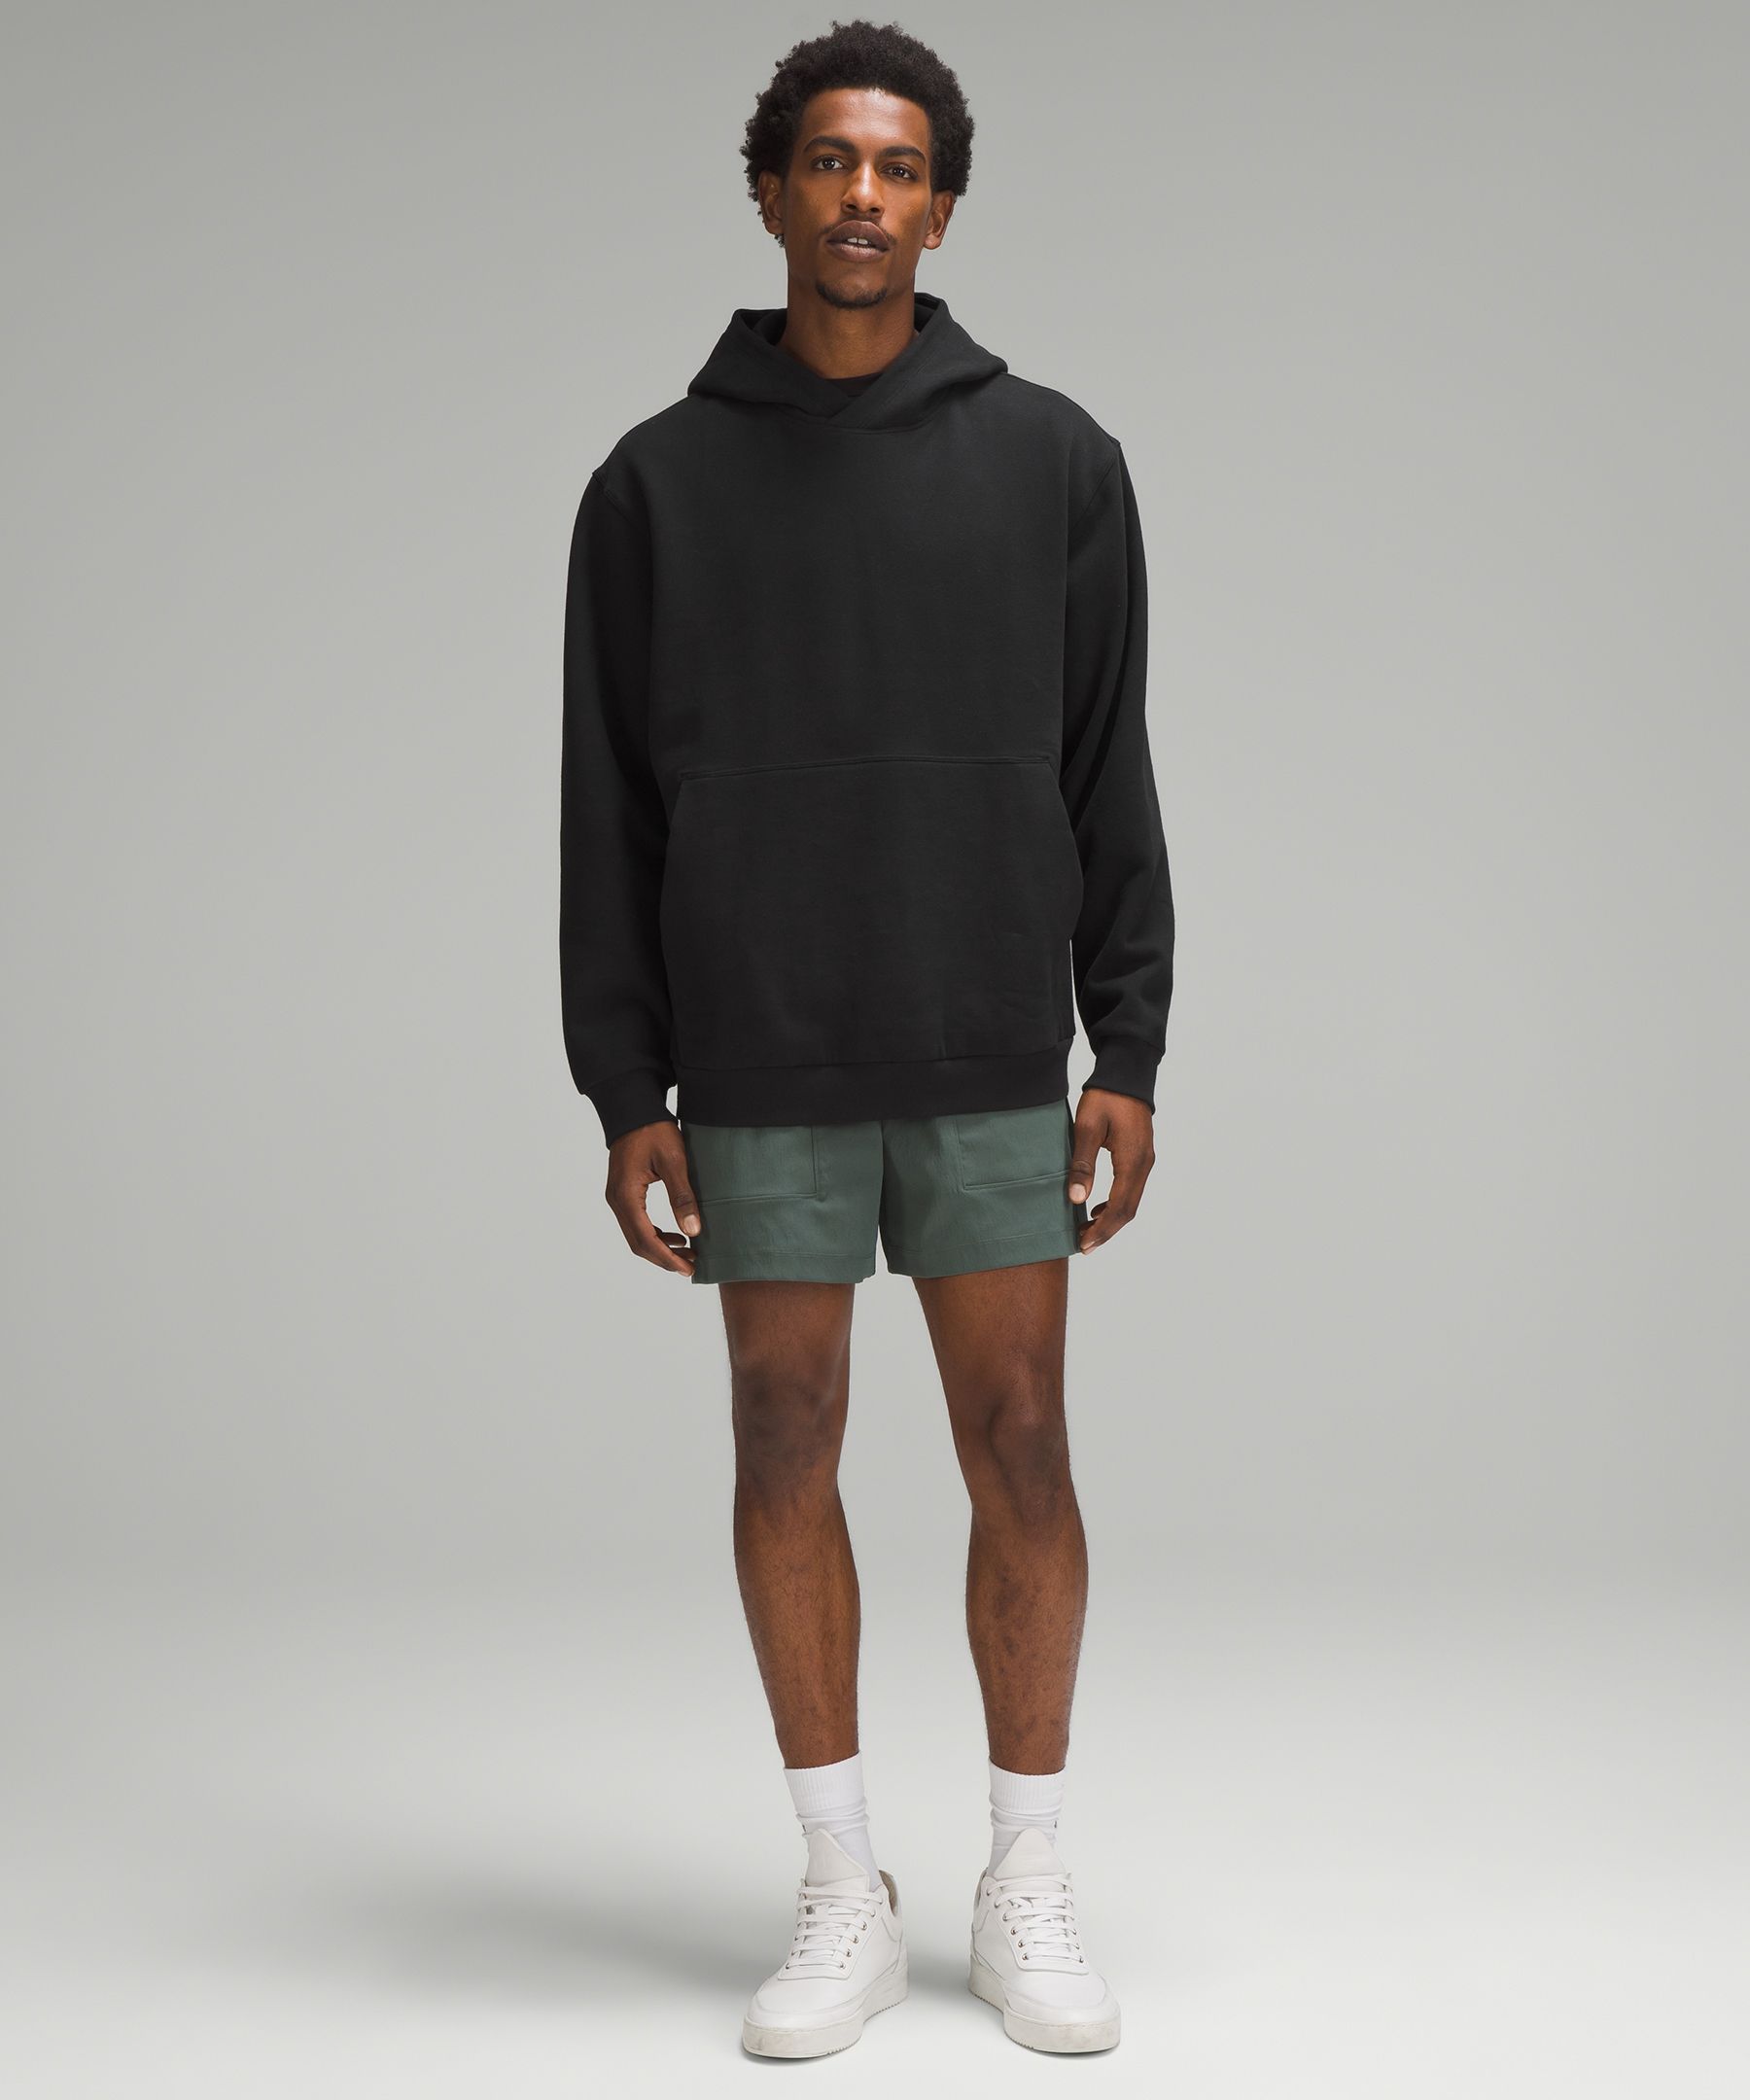  AMDBEL Mens Quarter Zip Pullover Sweatshirts for Men